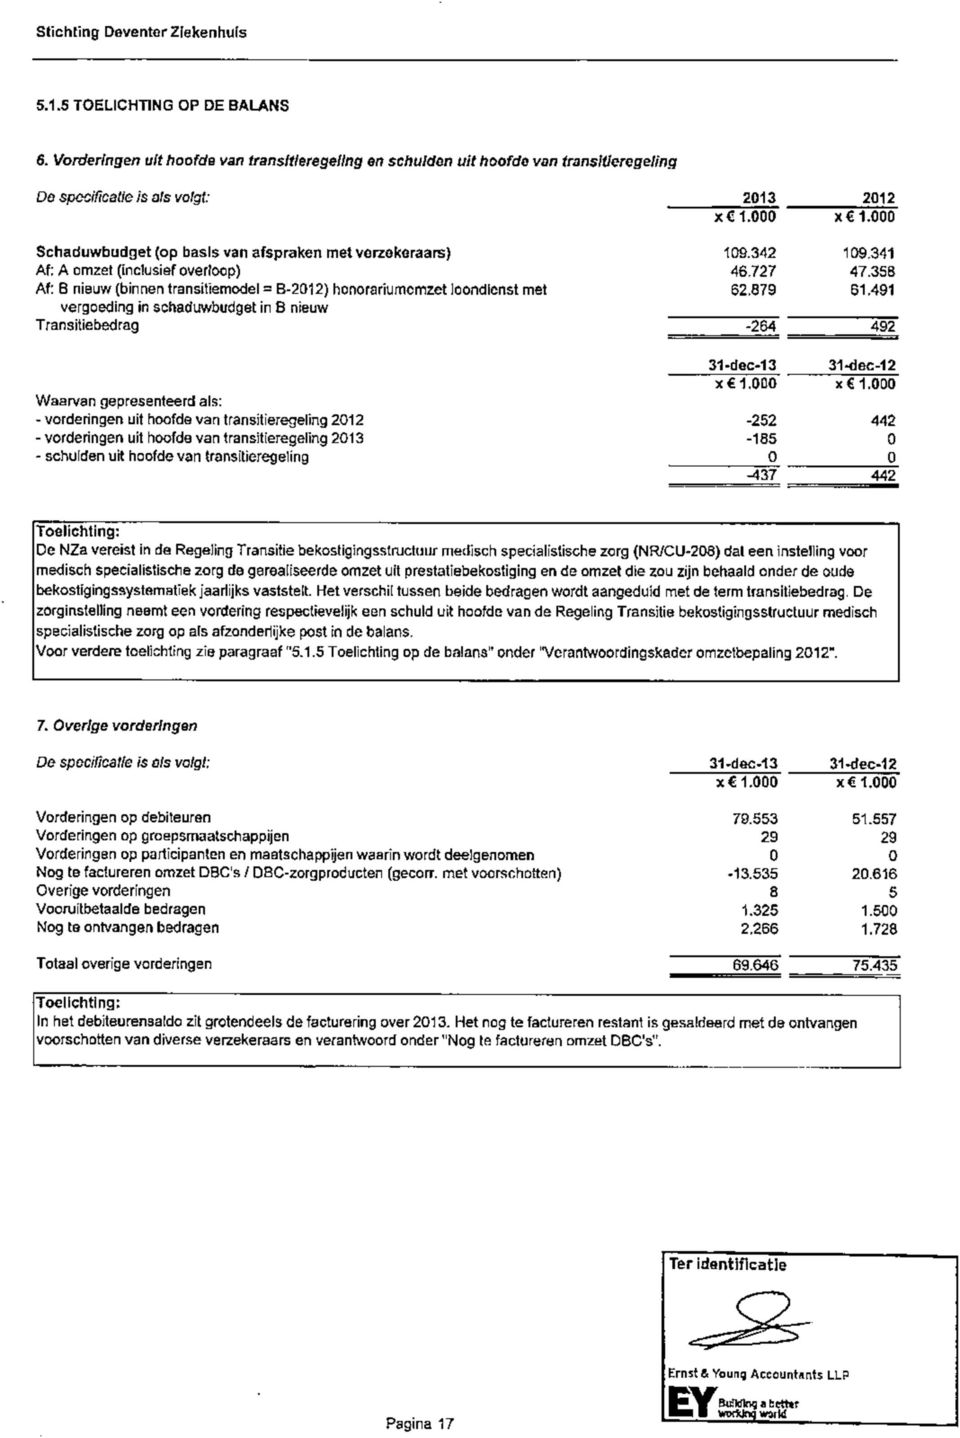 879 61.491 vergoeding in schaduwbudget in B nieuw Transitiebedrag -264 492 31-dec-13 31-dec-12 x 1.